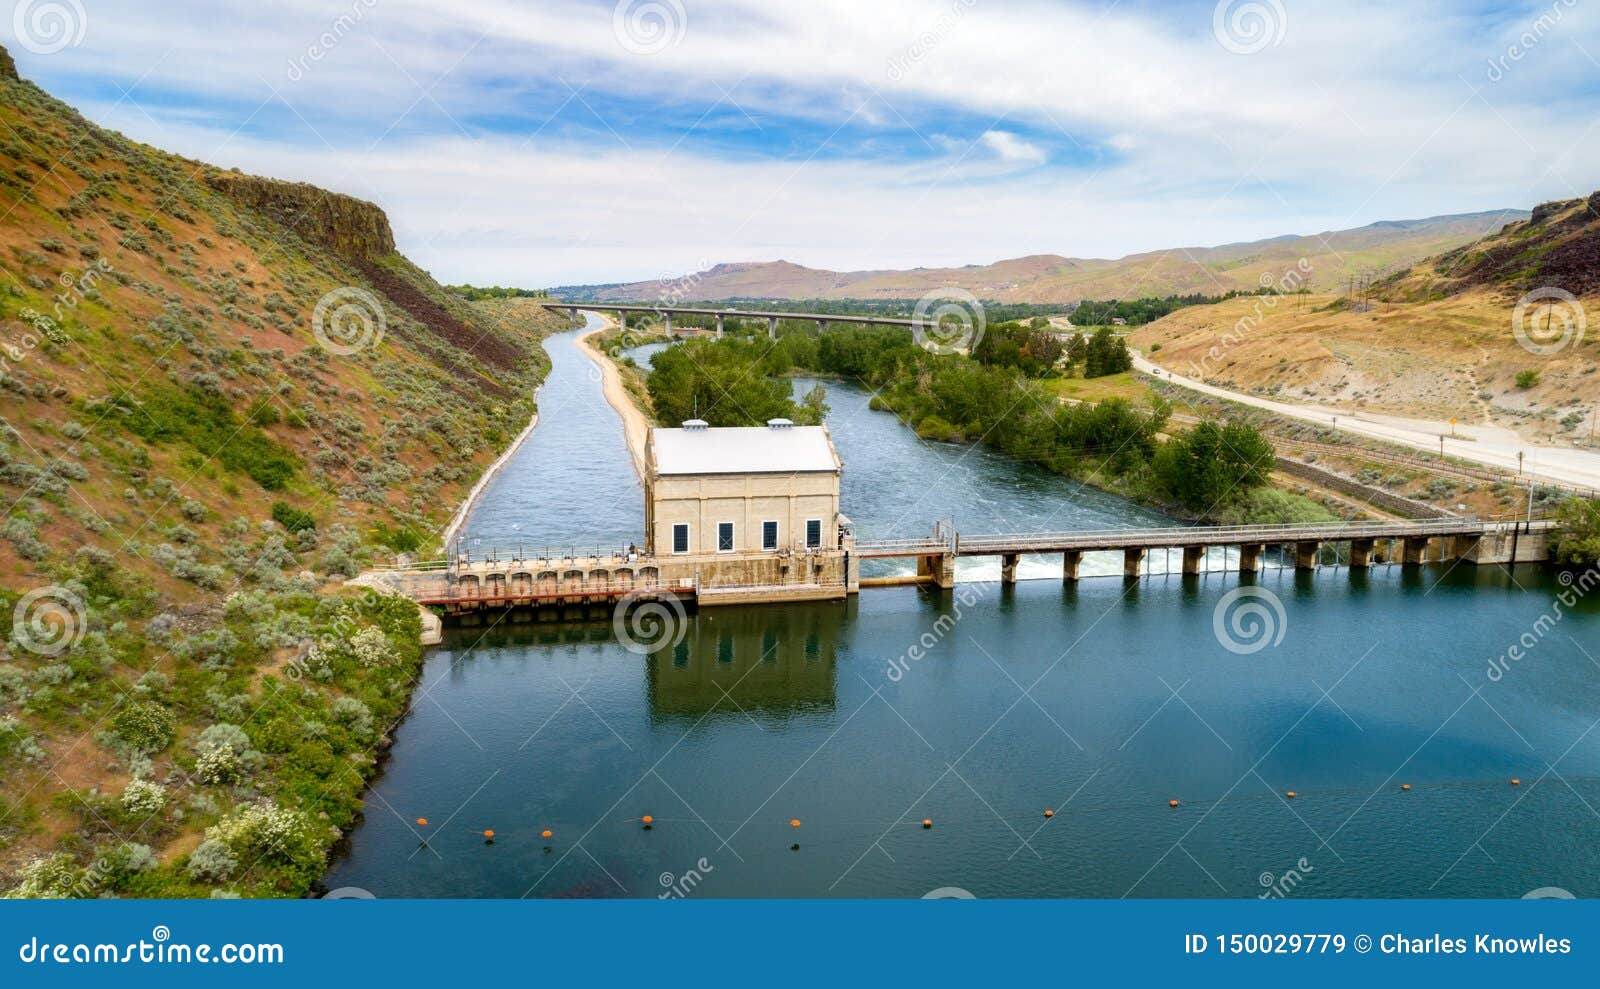 idahoÃ¢â¬â¢s diversion dam and canal water is diverted to on the boise river